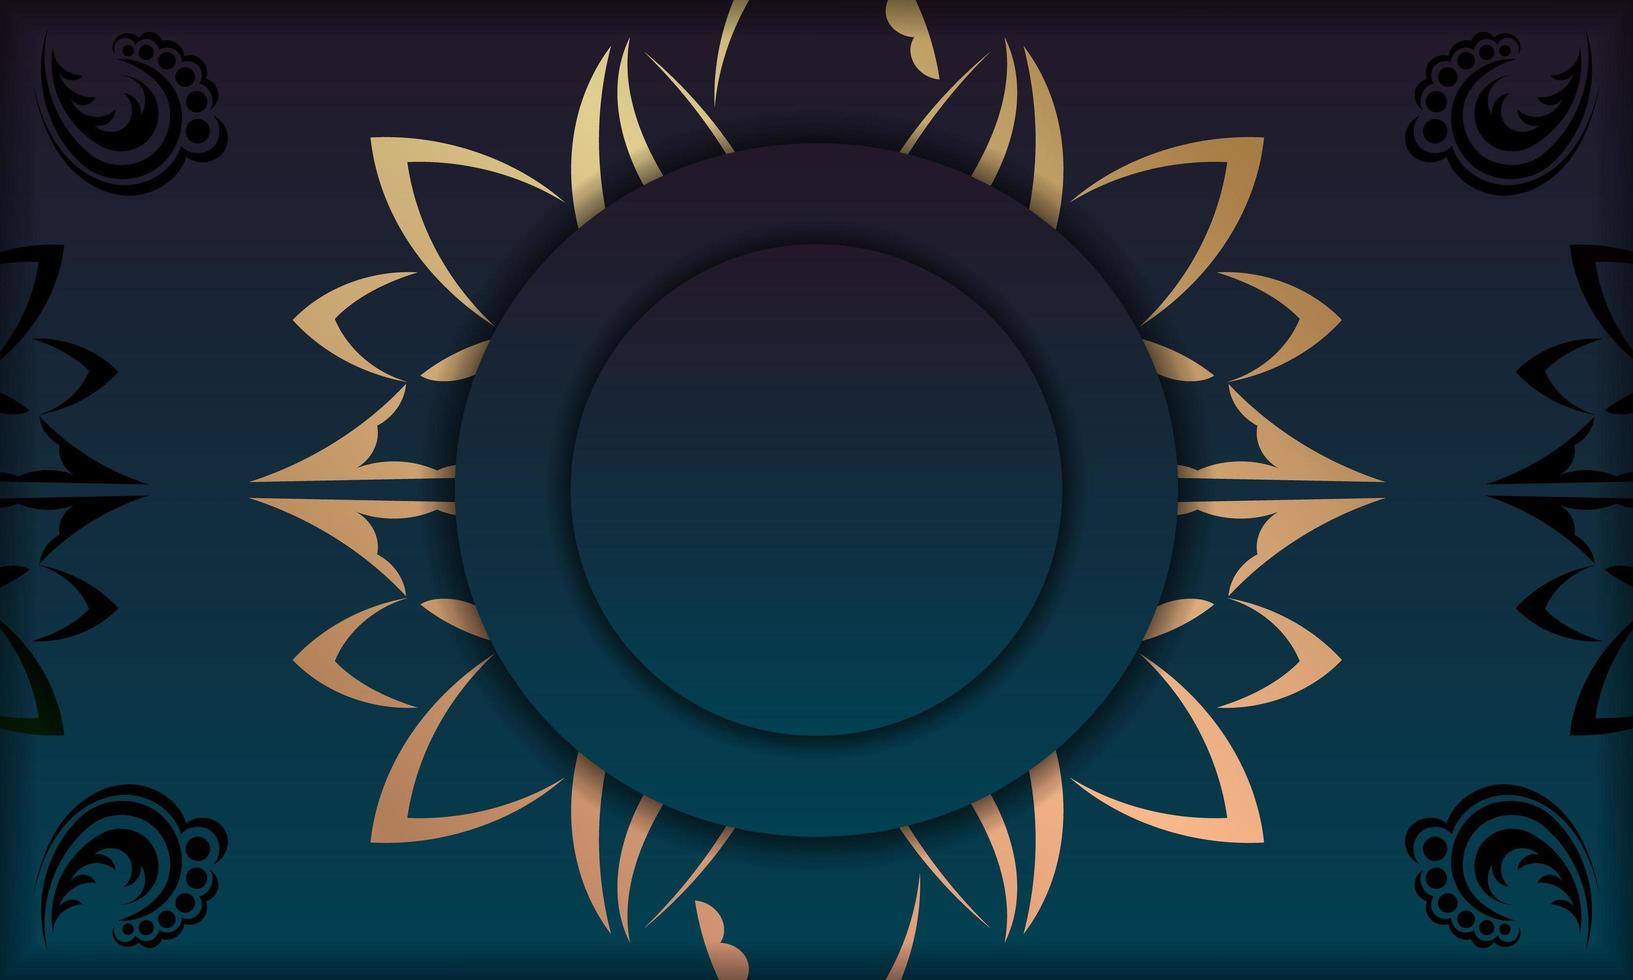 fond bleu dégradé avec ornements en or indien et espace pour votre logo vecteur